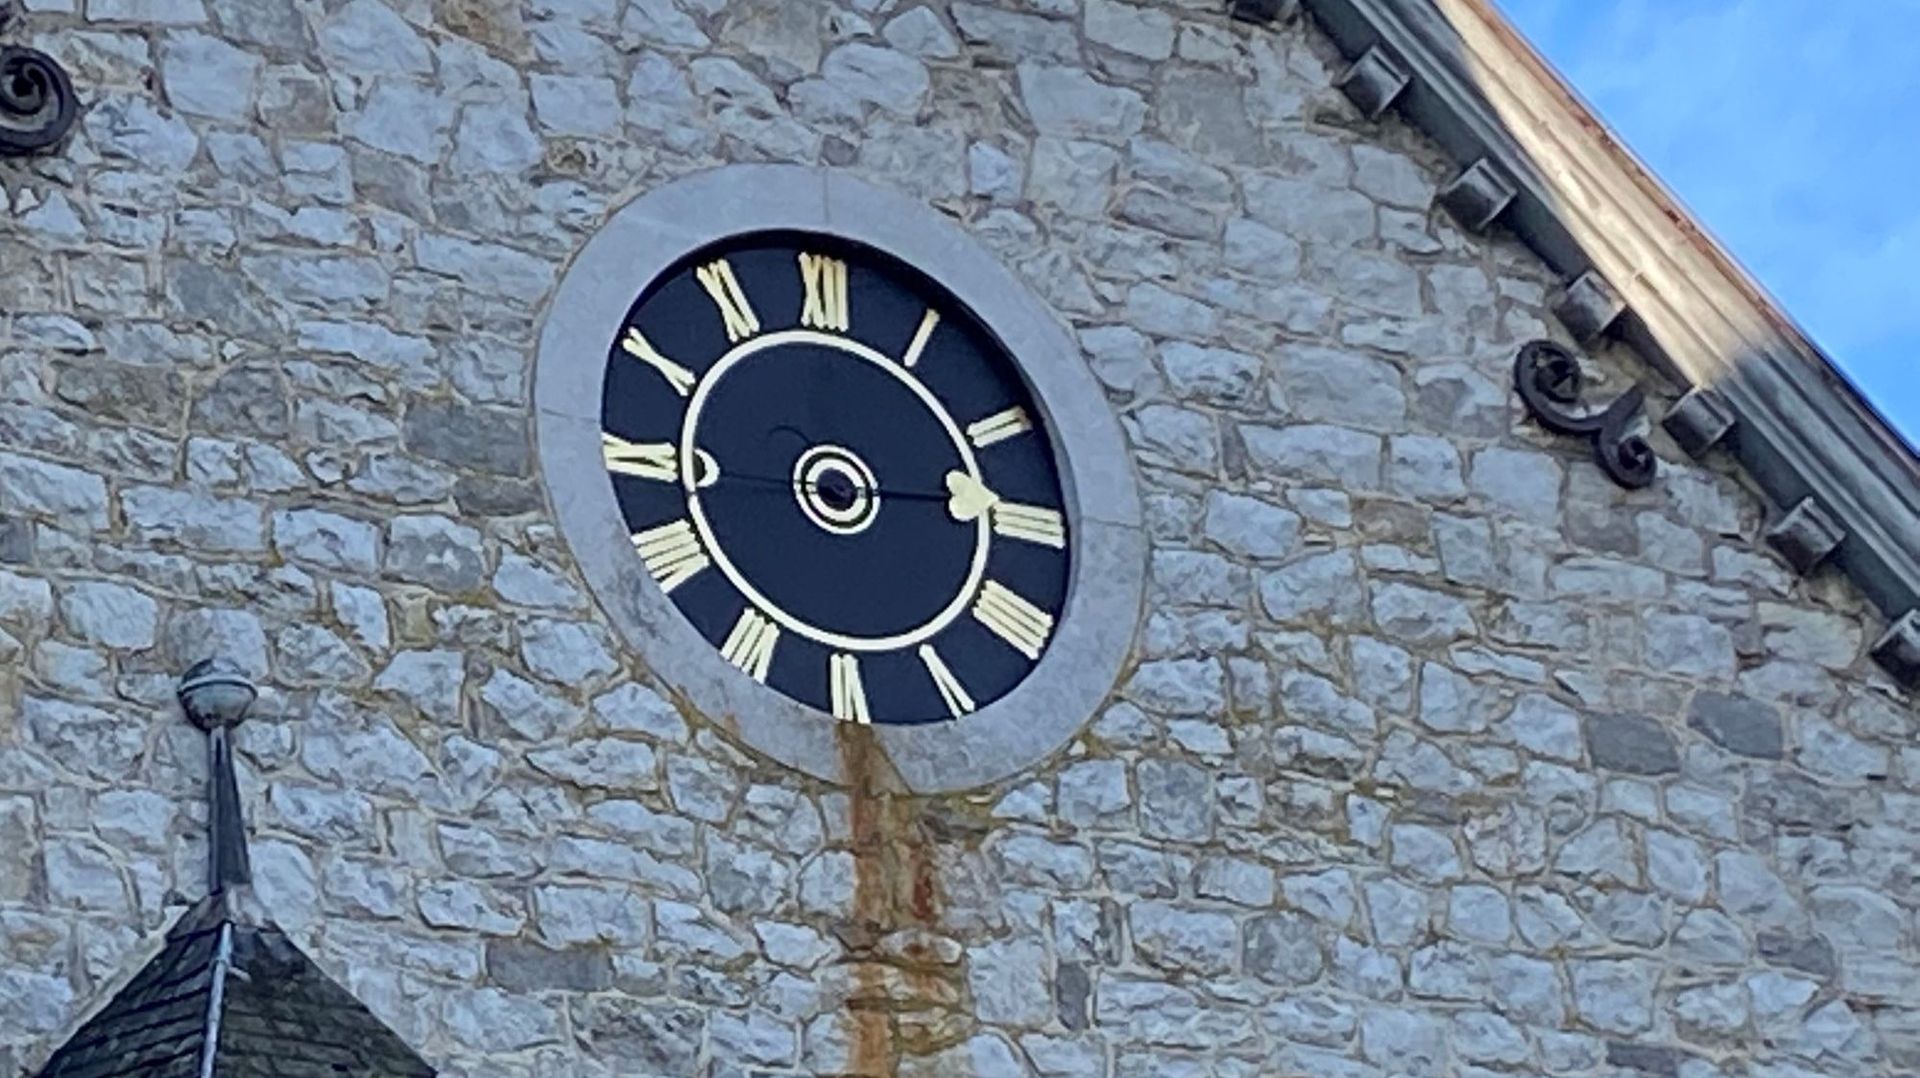 L’horloge a la particularité de n’avoir qu’une seule aiguille, signe d’une époque où le temps n’avait pas la même valeur.